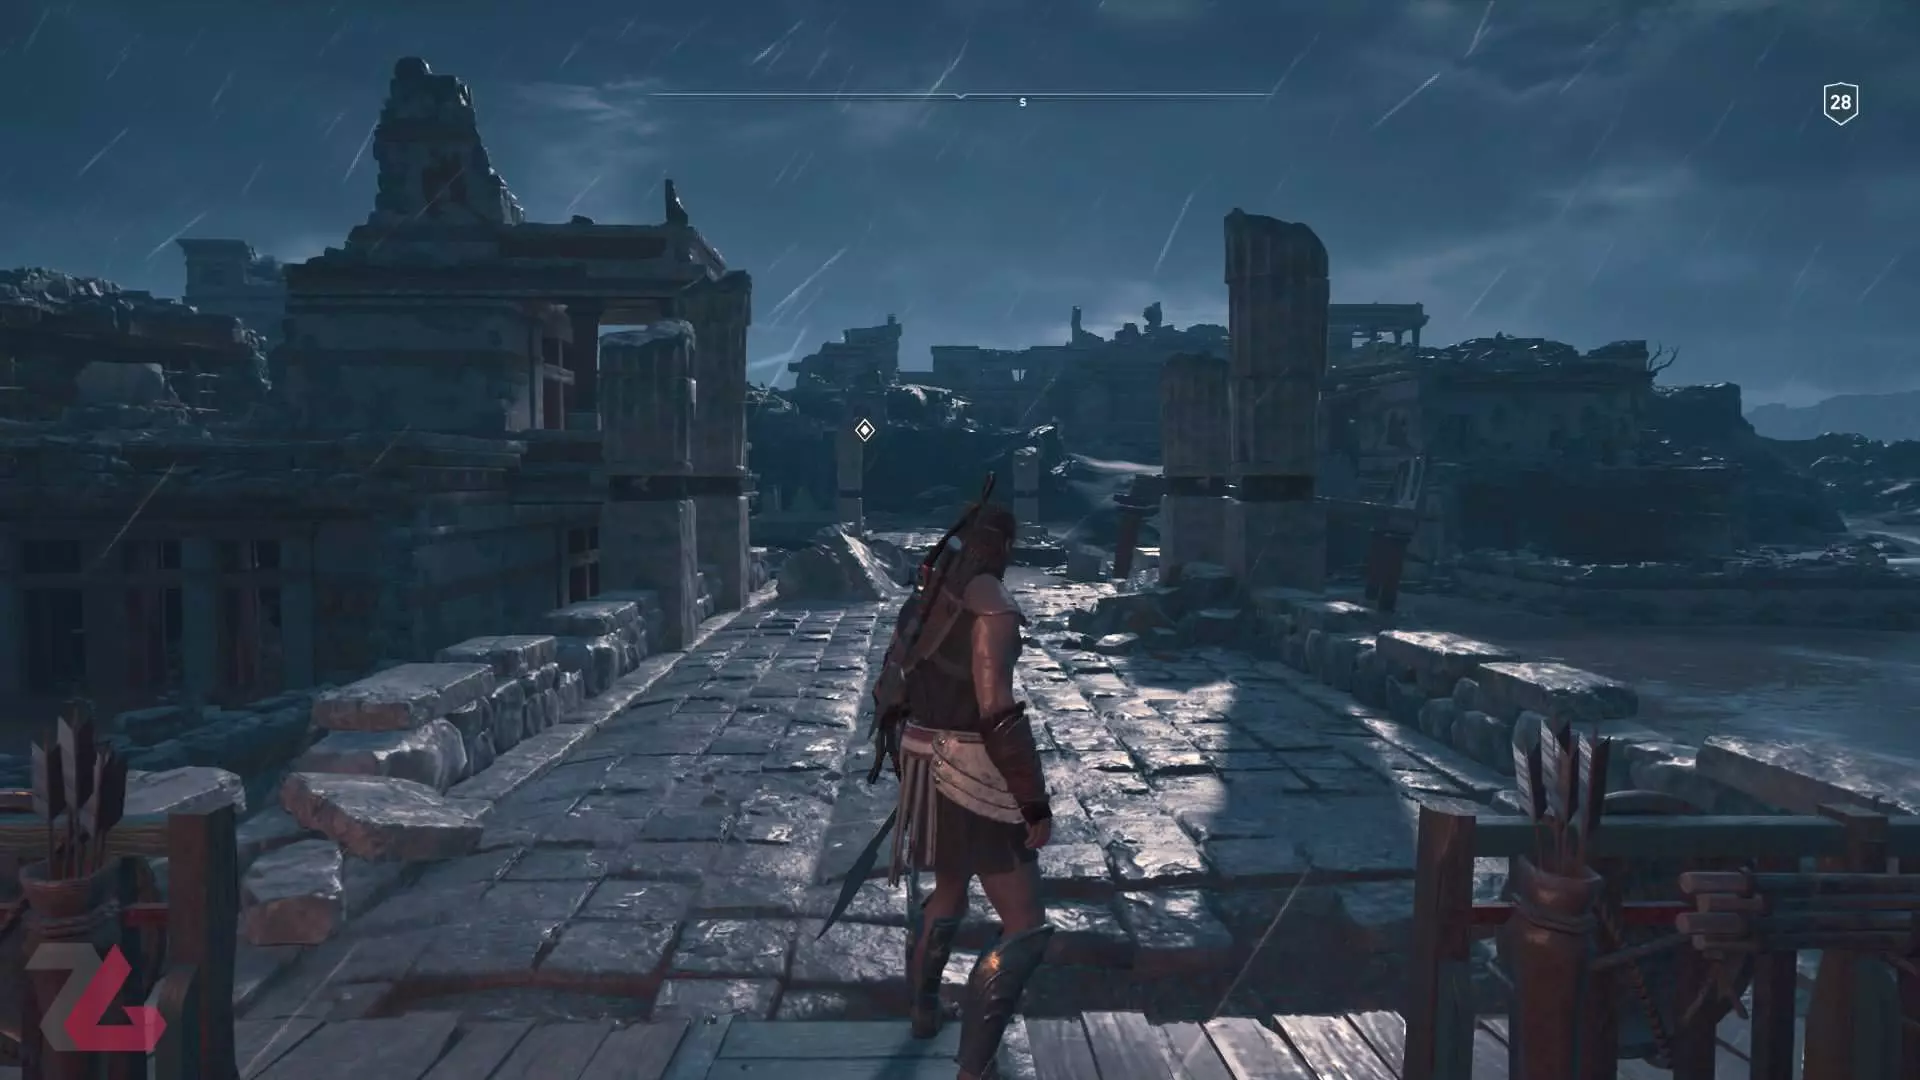 خرید بازی Assassin's Creed: Odyssey - اساسینز کرید: ادیسه پلی استیشن PS4 , PS5 با قیمت مناسب همراه نقد و بررسی